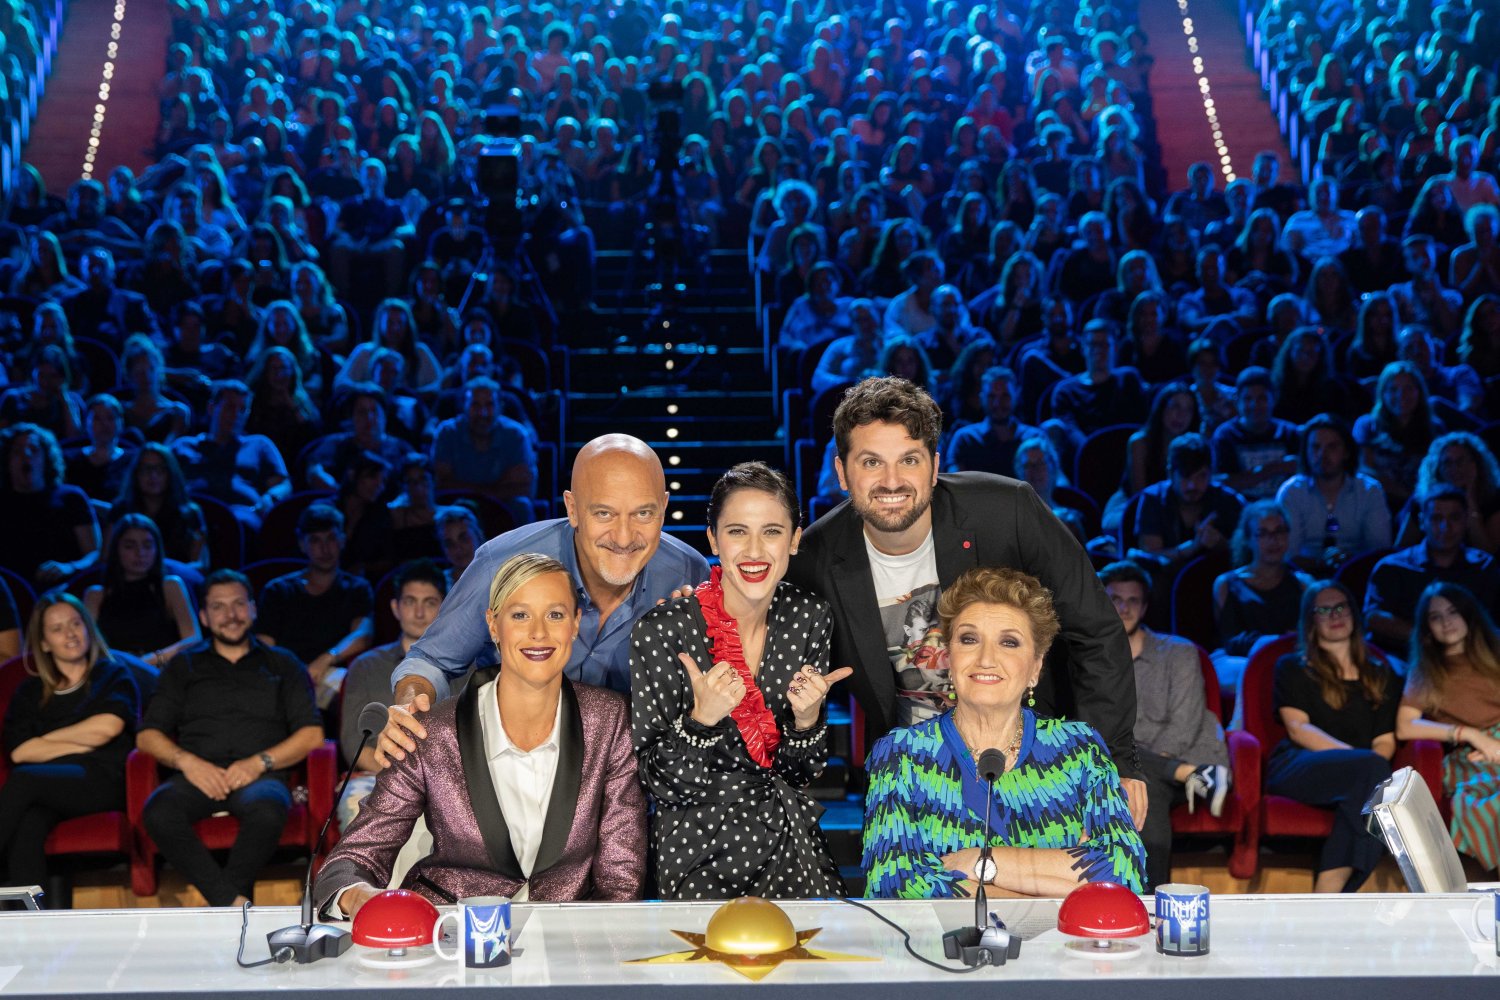 Foto - Italia's Got Talent su TV8 e Sky Uno. Bisio, Matano e Pellegrini cercano golden buzzer